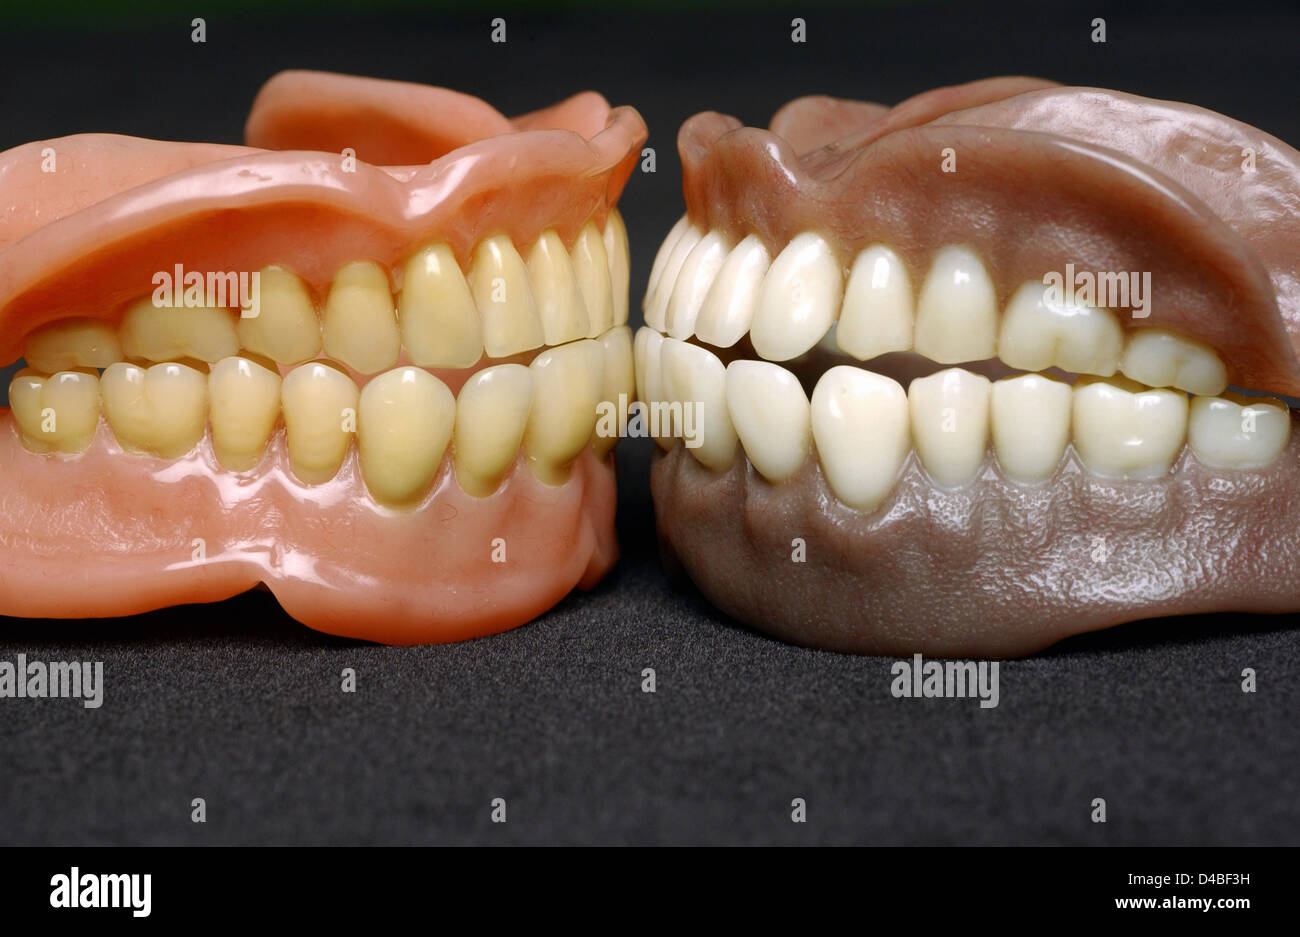 Las dentaduras postizas o los dientes postizos realizados sobre la base de  acrílico acrílico o dentaduras dientes montados de cerámica hecha por  persona permanecer en Fotografía de stock - Alamy